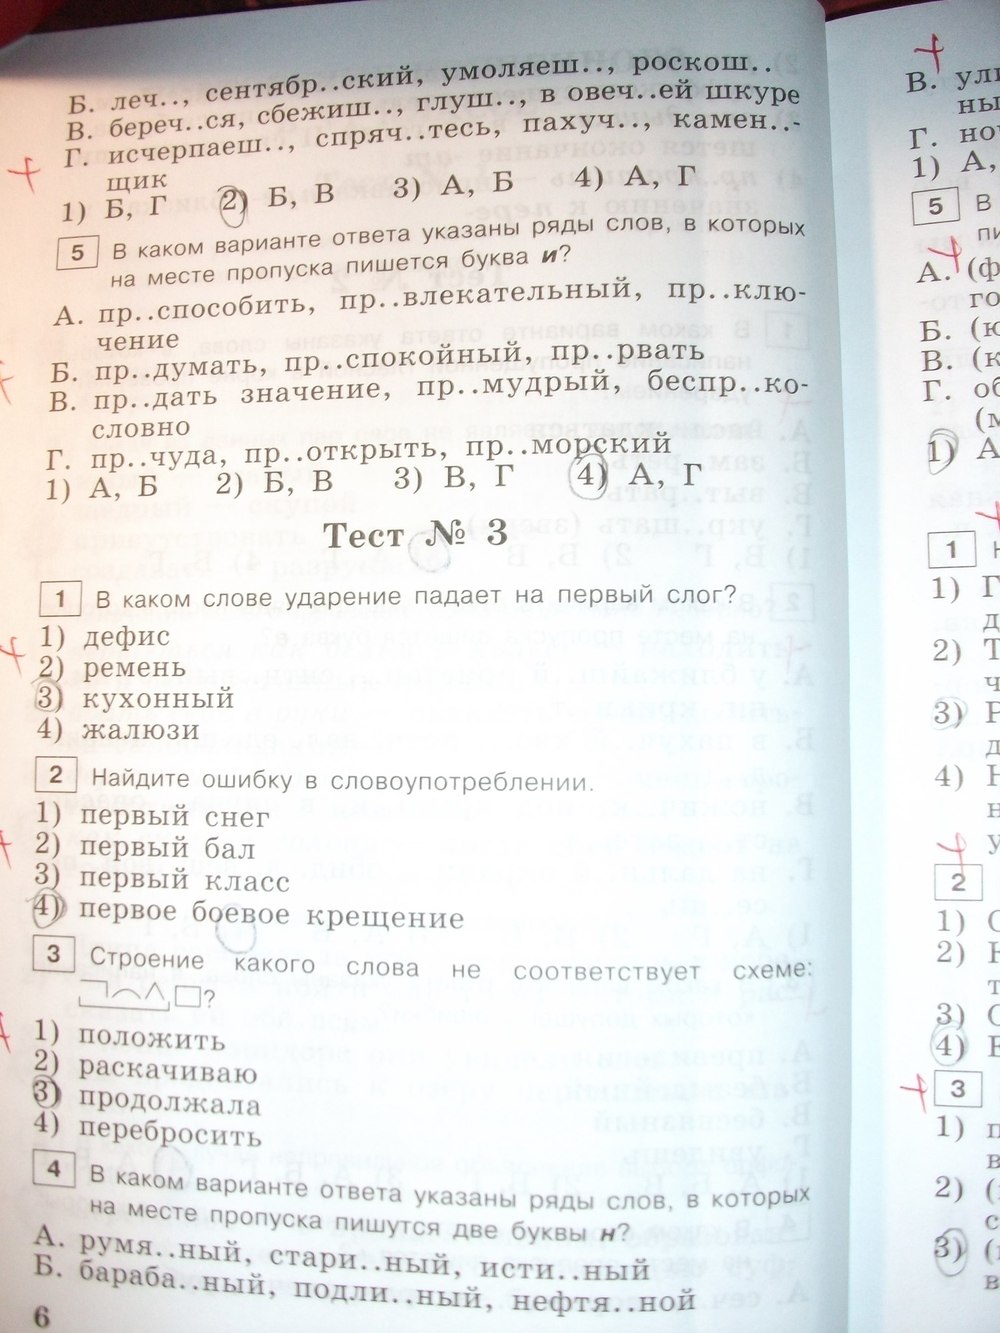 Тесты по русскому языку 7 класс богданова скачать